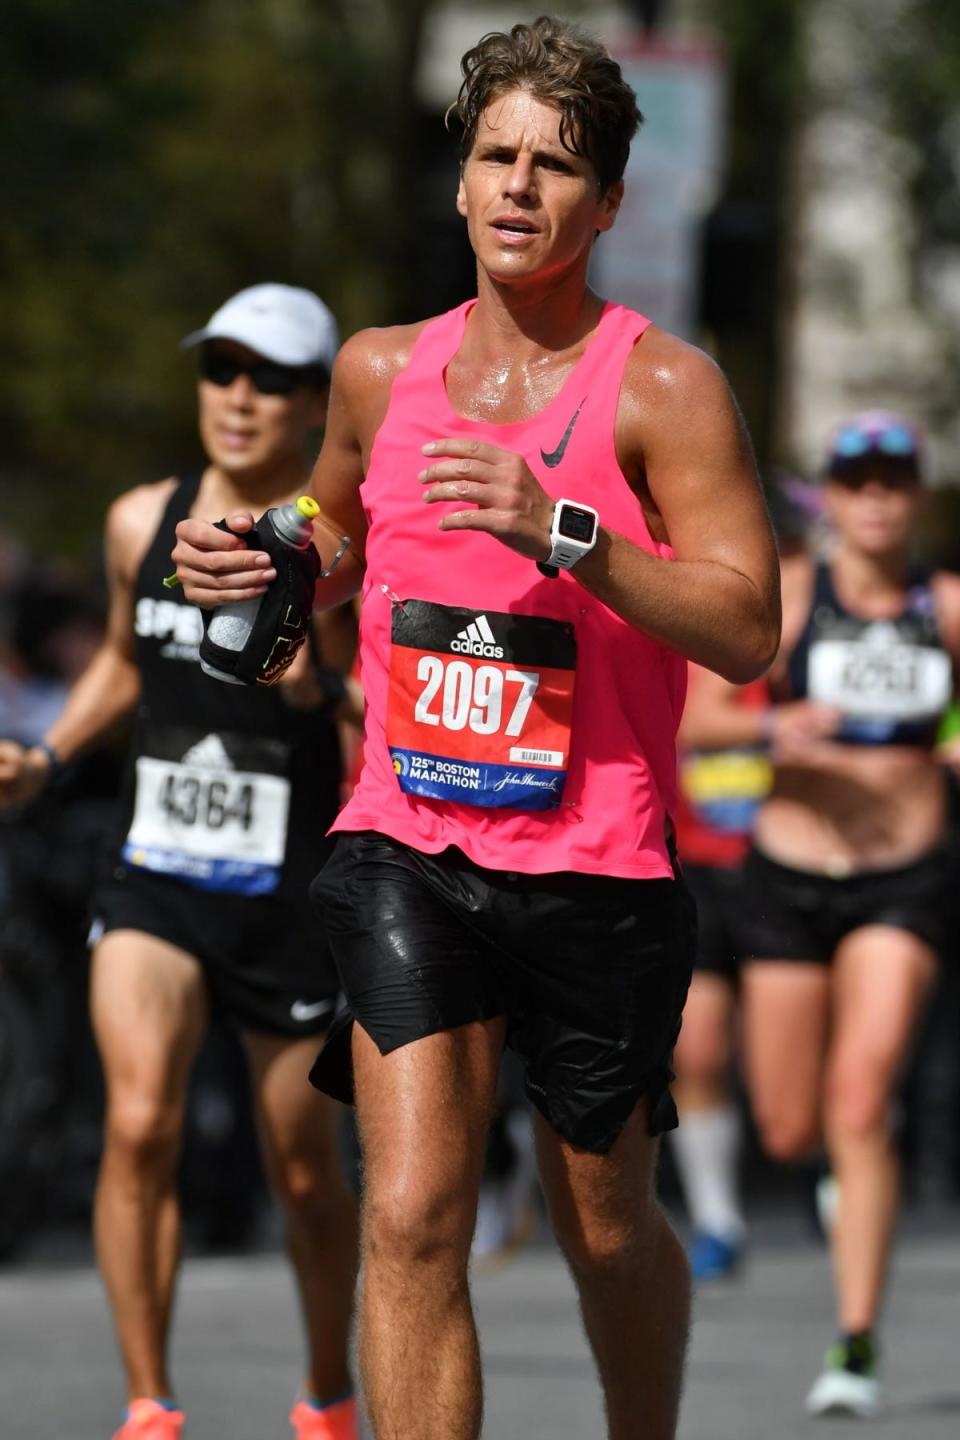 Justin Rollins running in the Boston Marathon.